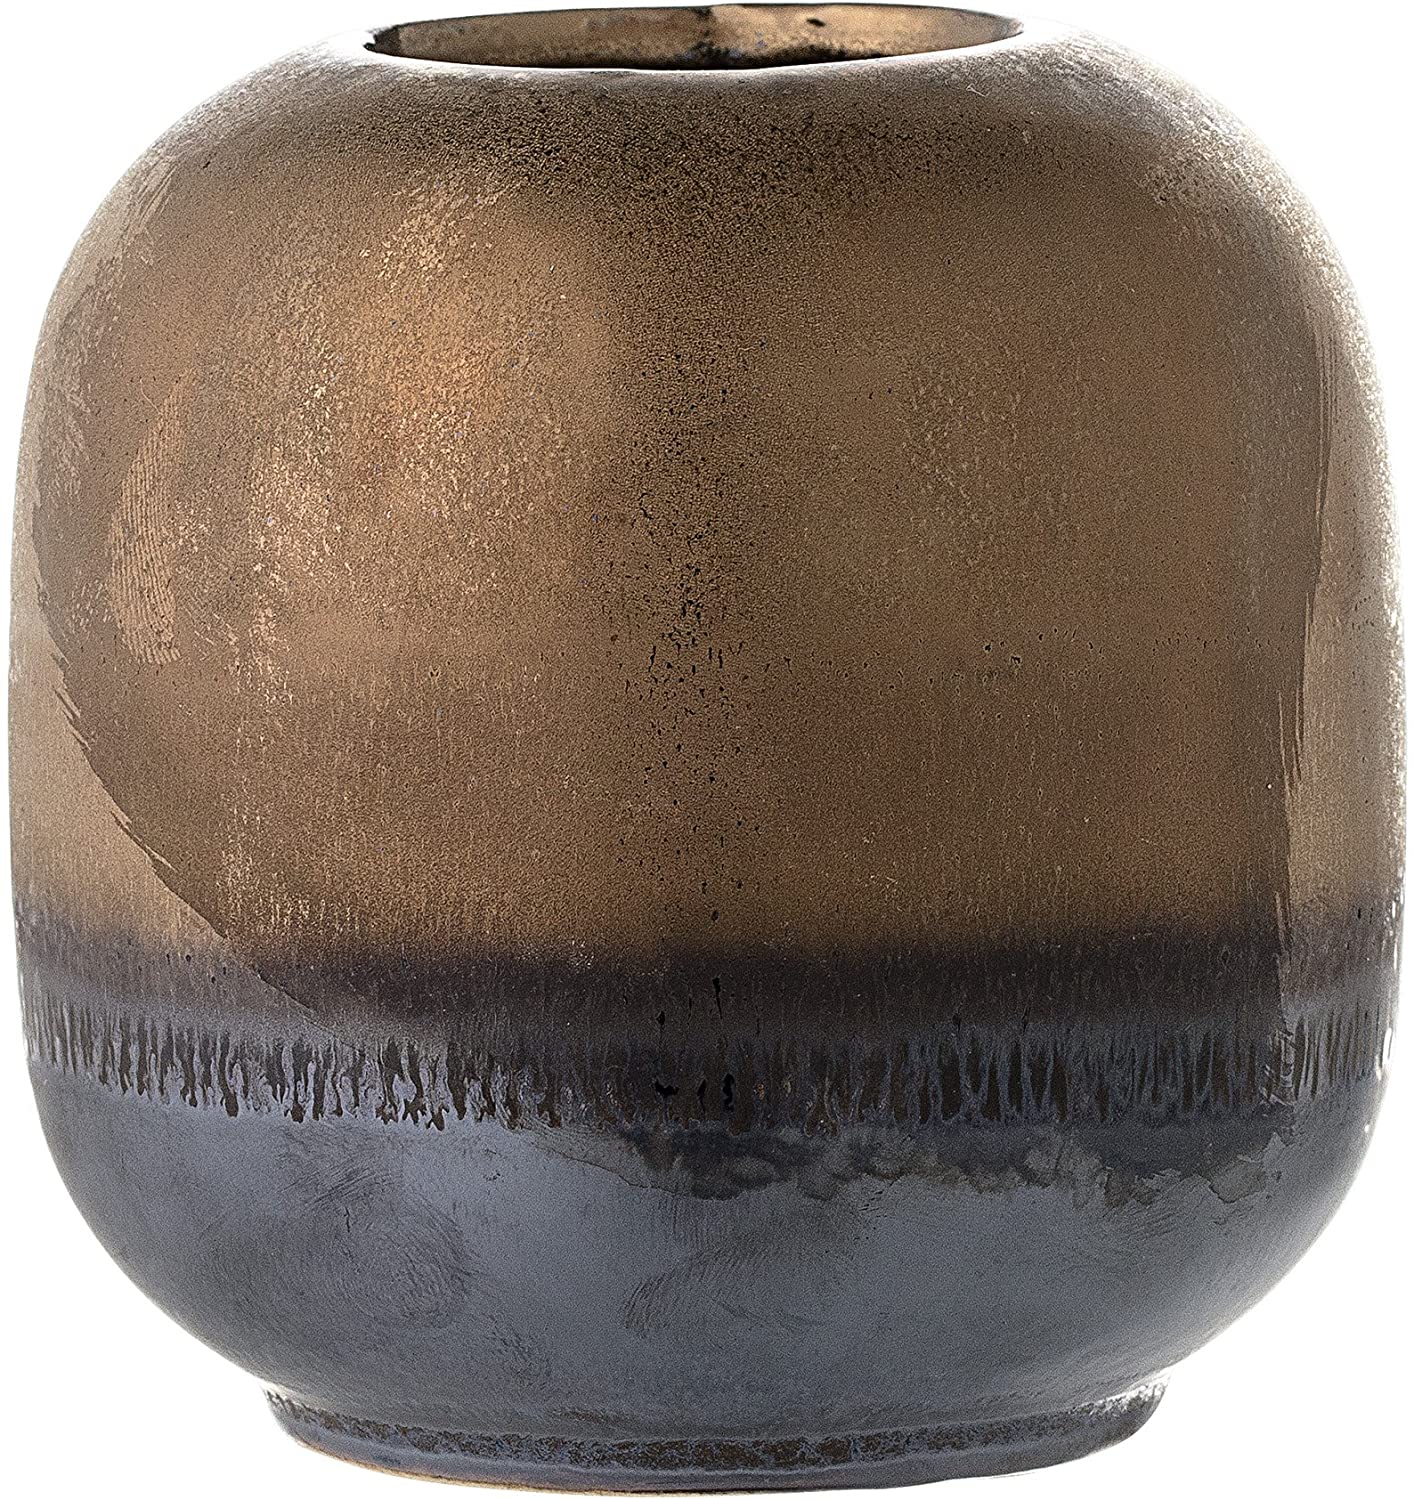 Bloomingville Bronze Ceramic Vase